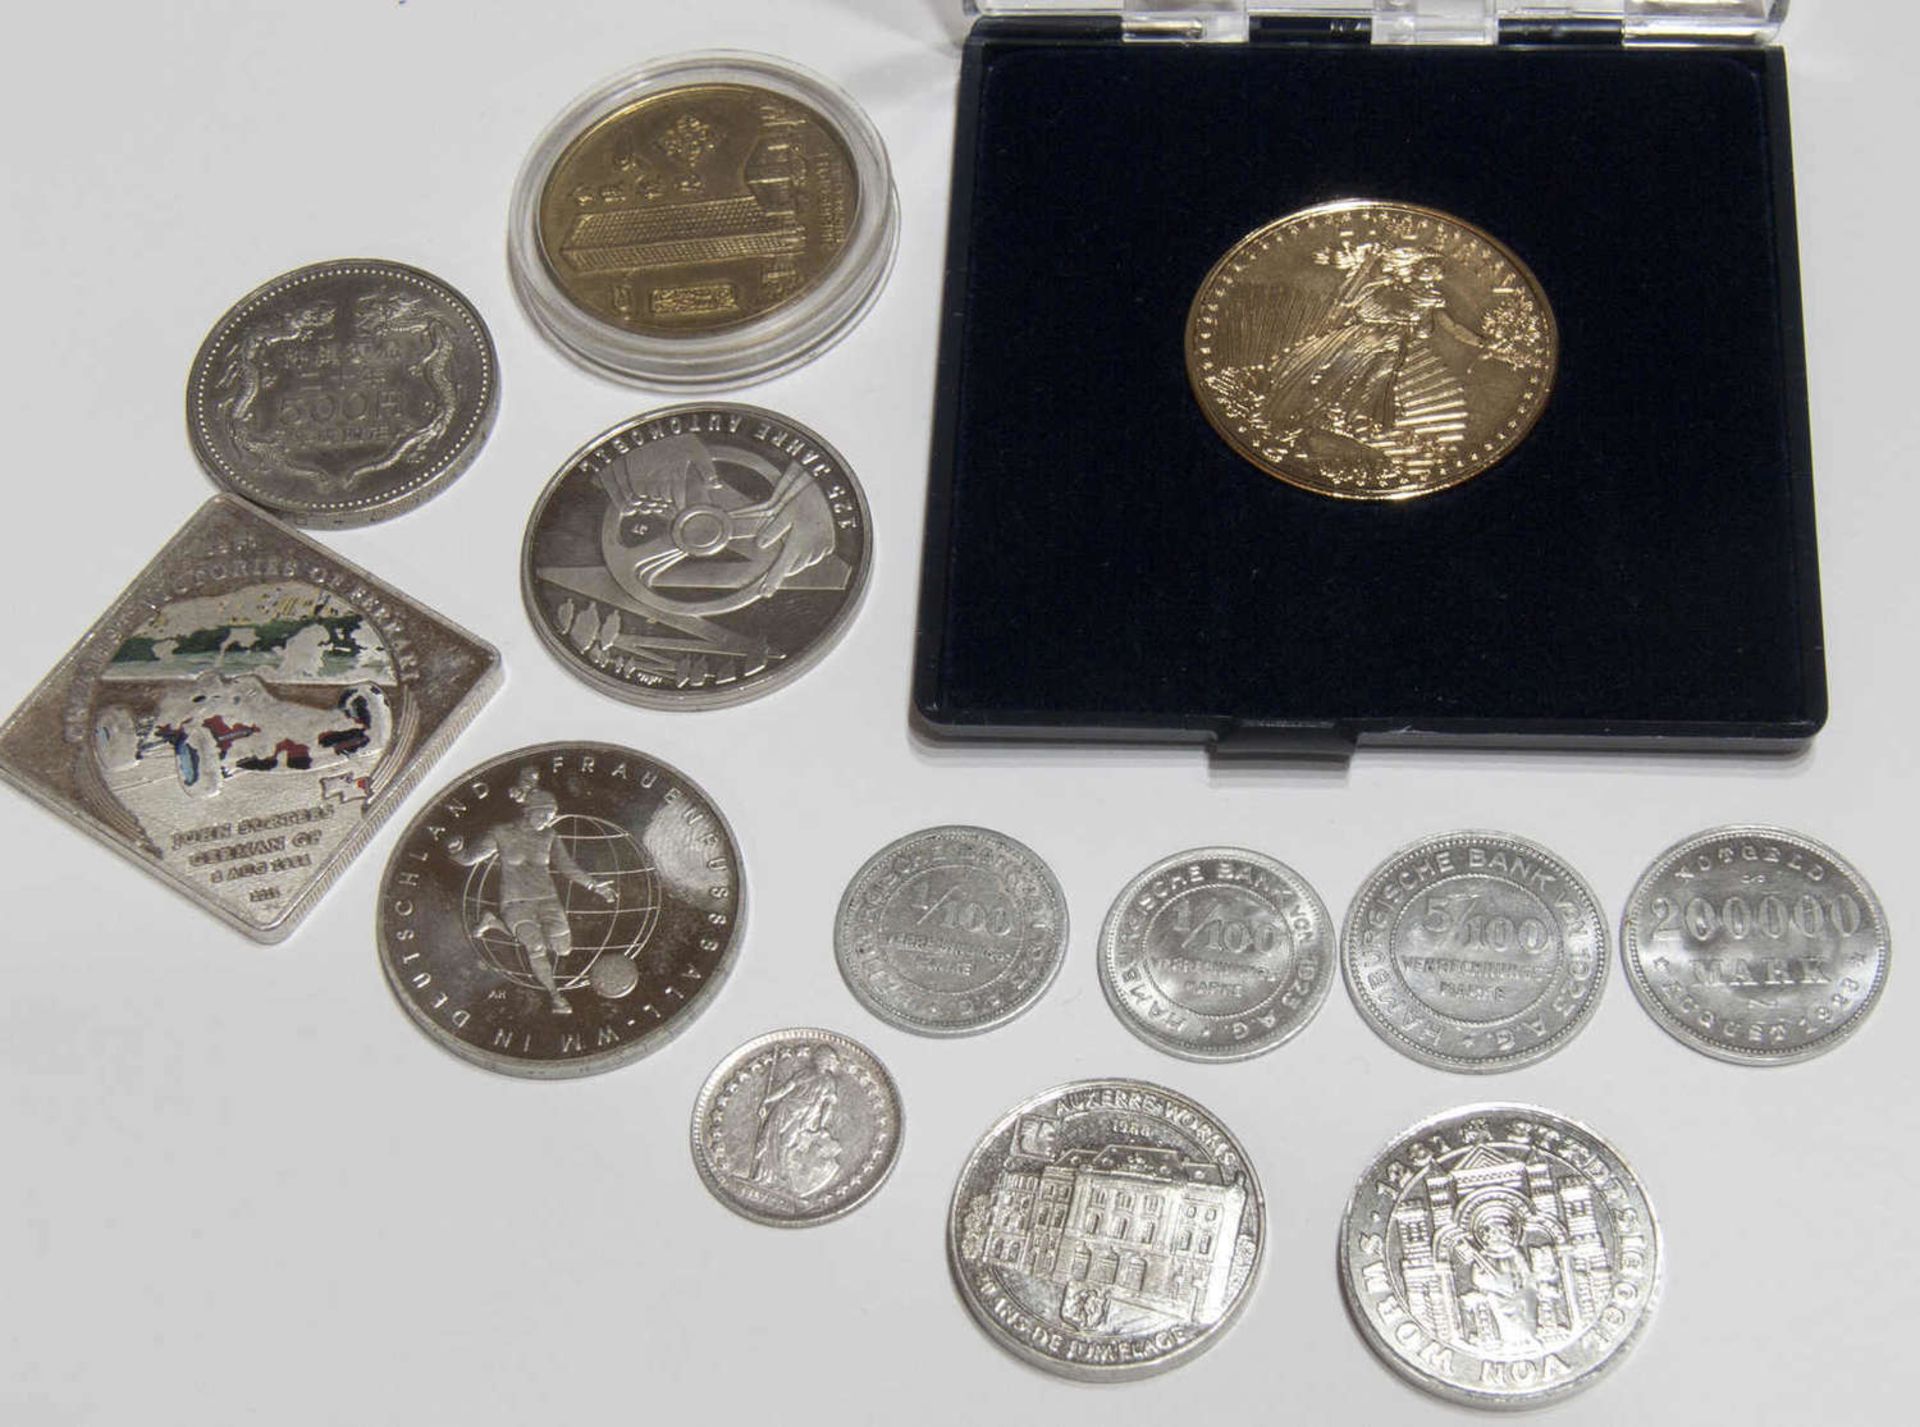 Lot Münzen und Medaillen aus aller Welt. Dabei: Hamburg 1923 Notgeld, 2 x 10 Euro - Münzen,